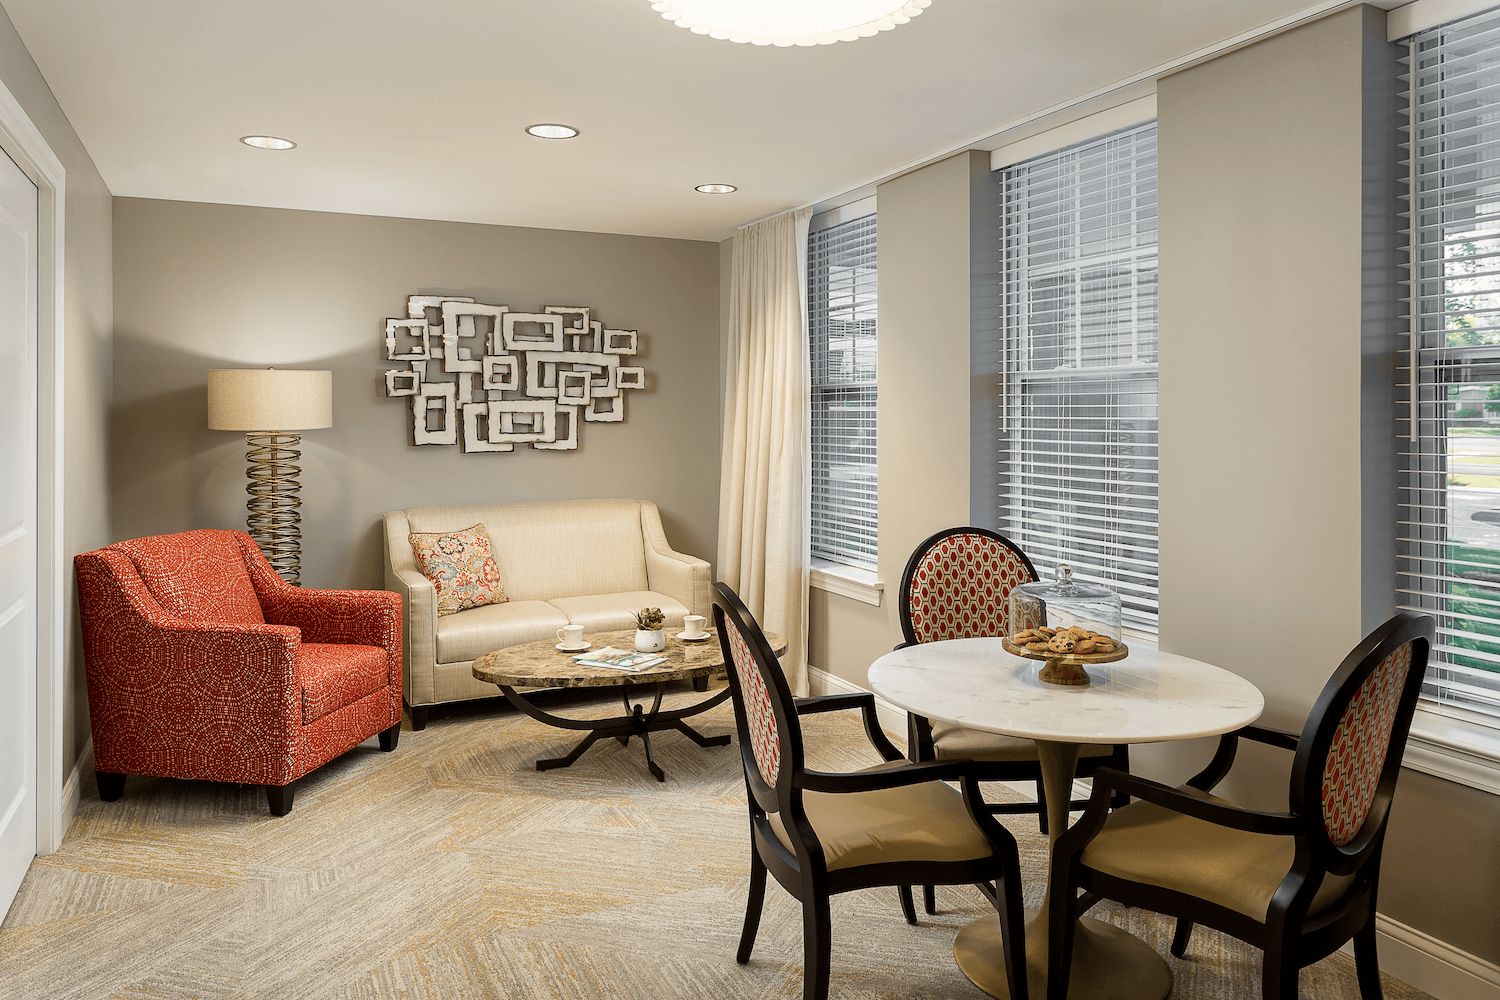 Interior view of Arbor Terrace Glenview senior living community featuring elegant decor and furniture.